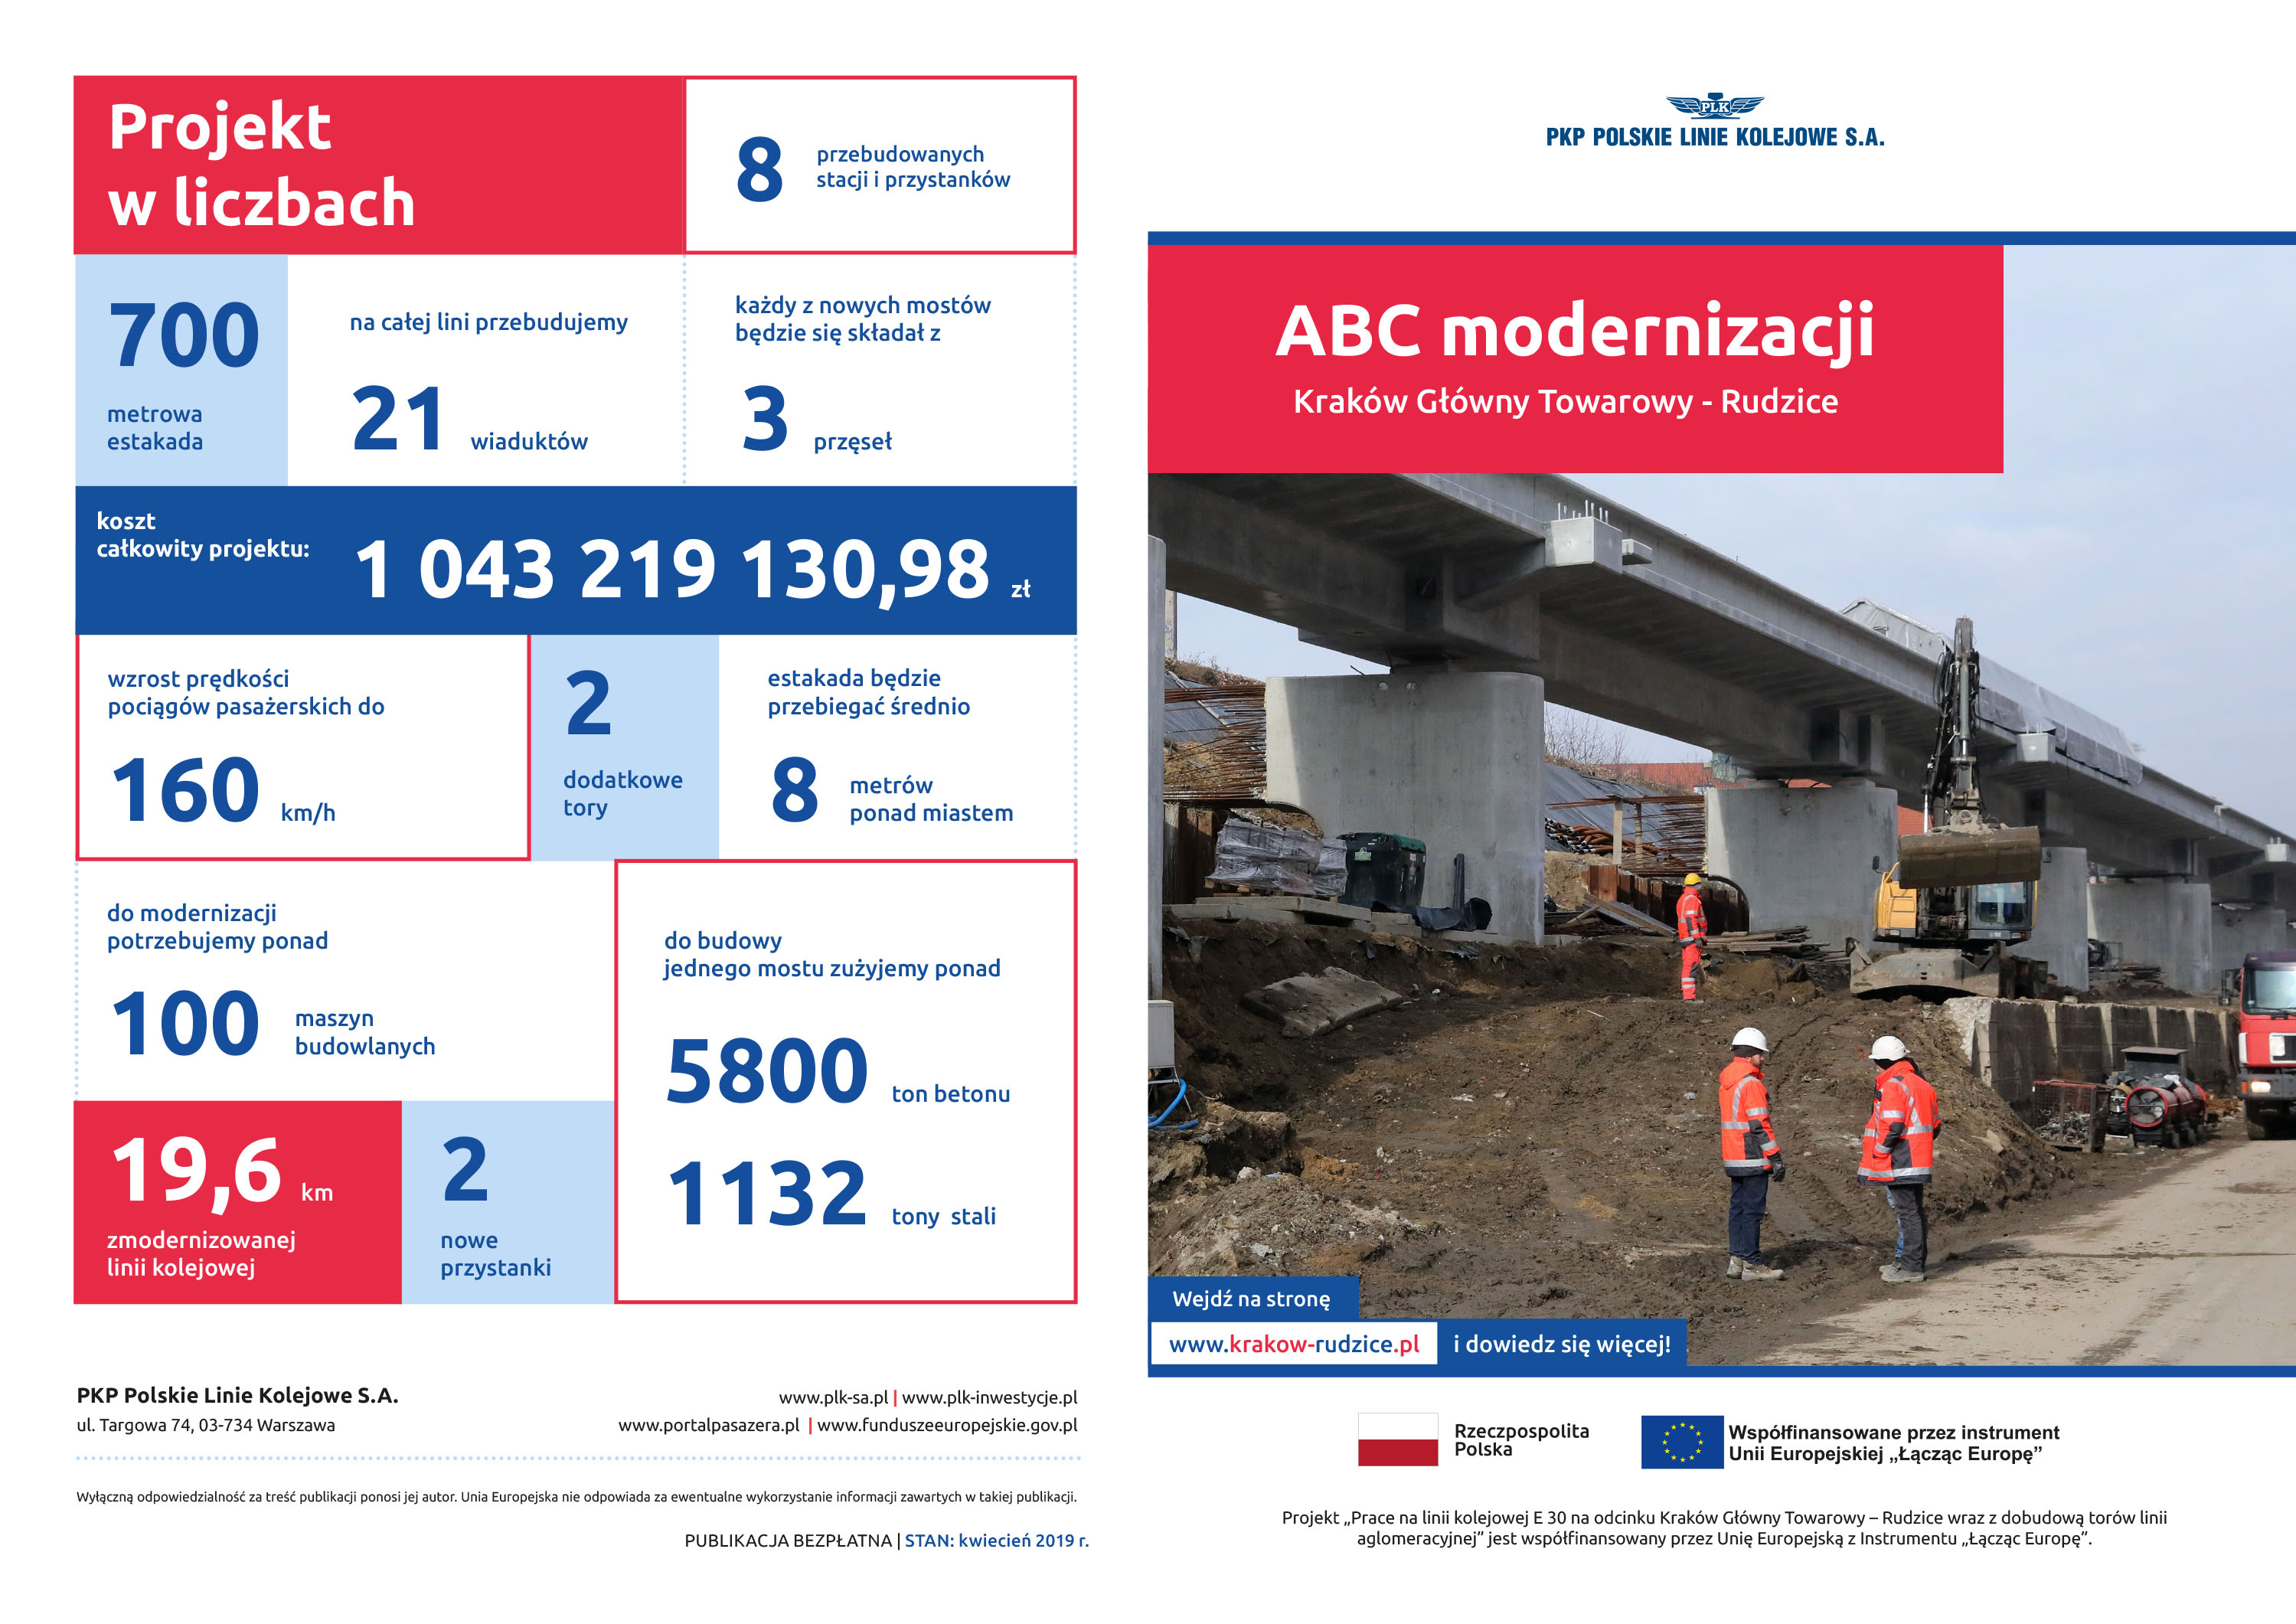 folder obrazujący postępy w modernizacji krakowskiego węzła kolejowego kwiecień 2019 r.